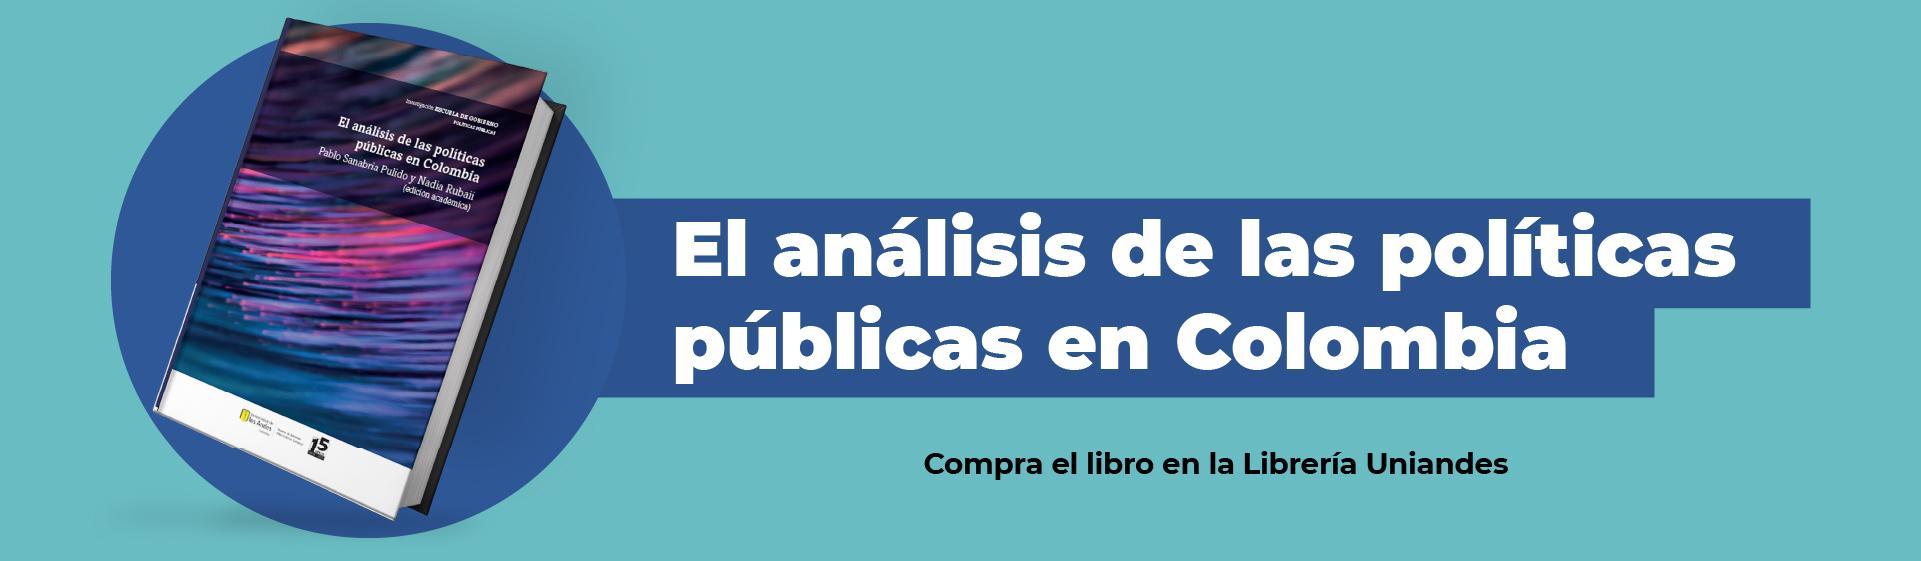 El análisis de las políticas públicas en Colombia